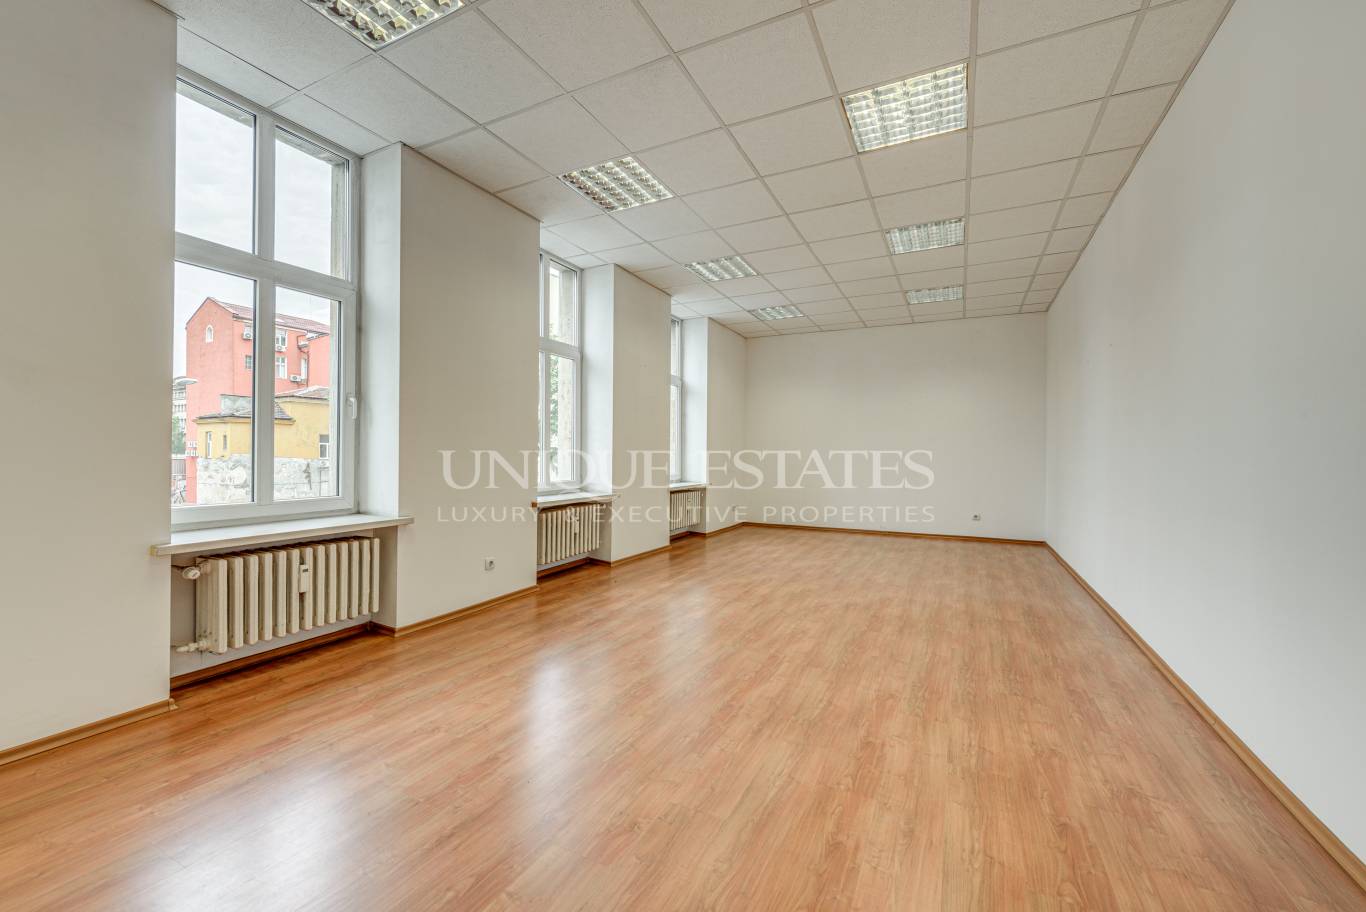 Офис под наем в София, Център - код на имота: K4831 - image 4